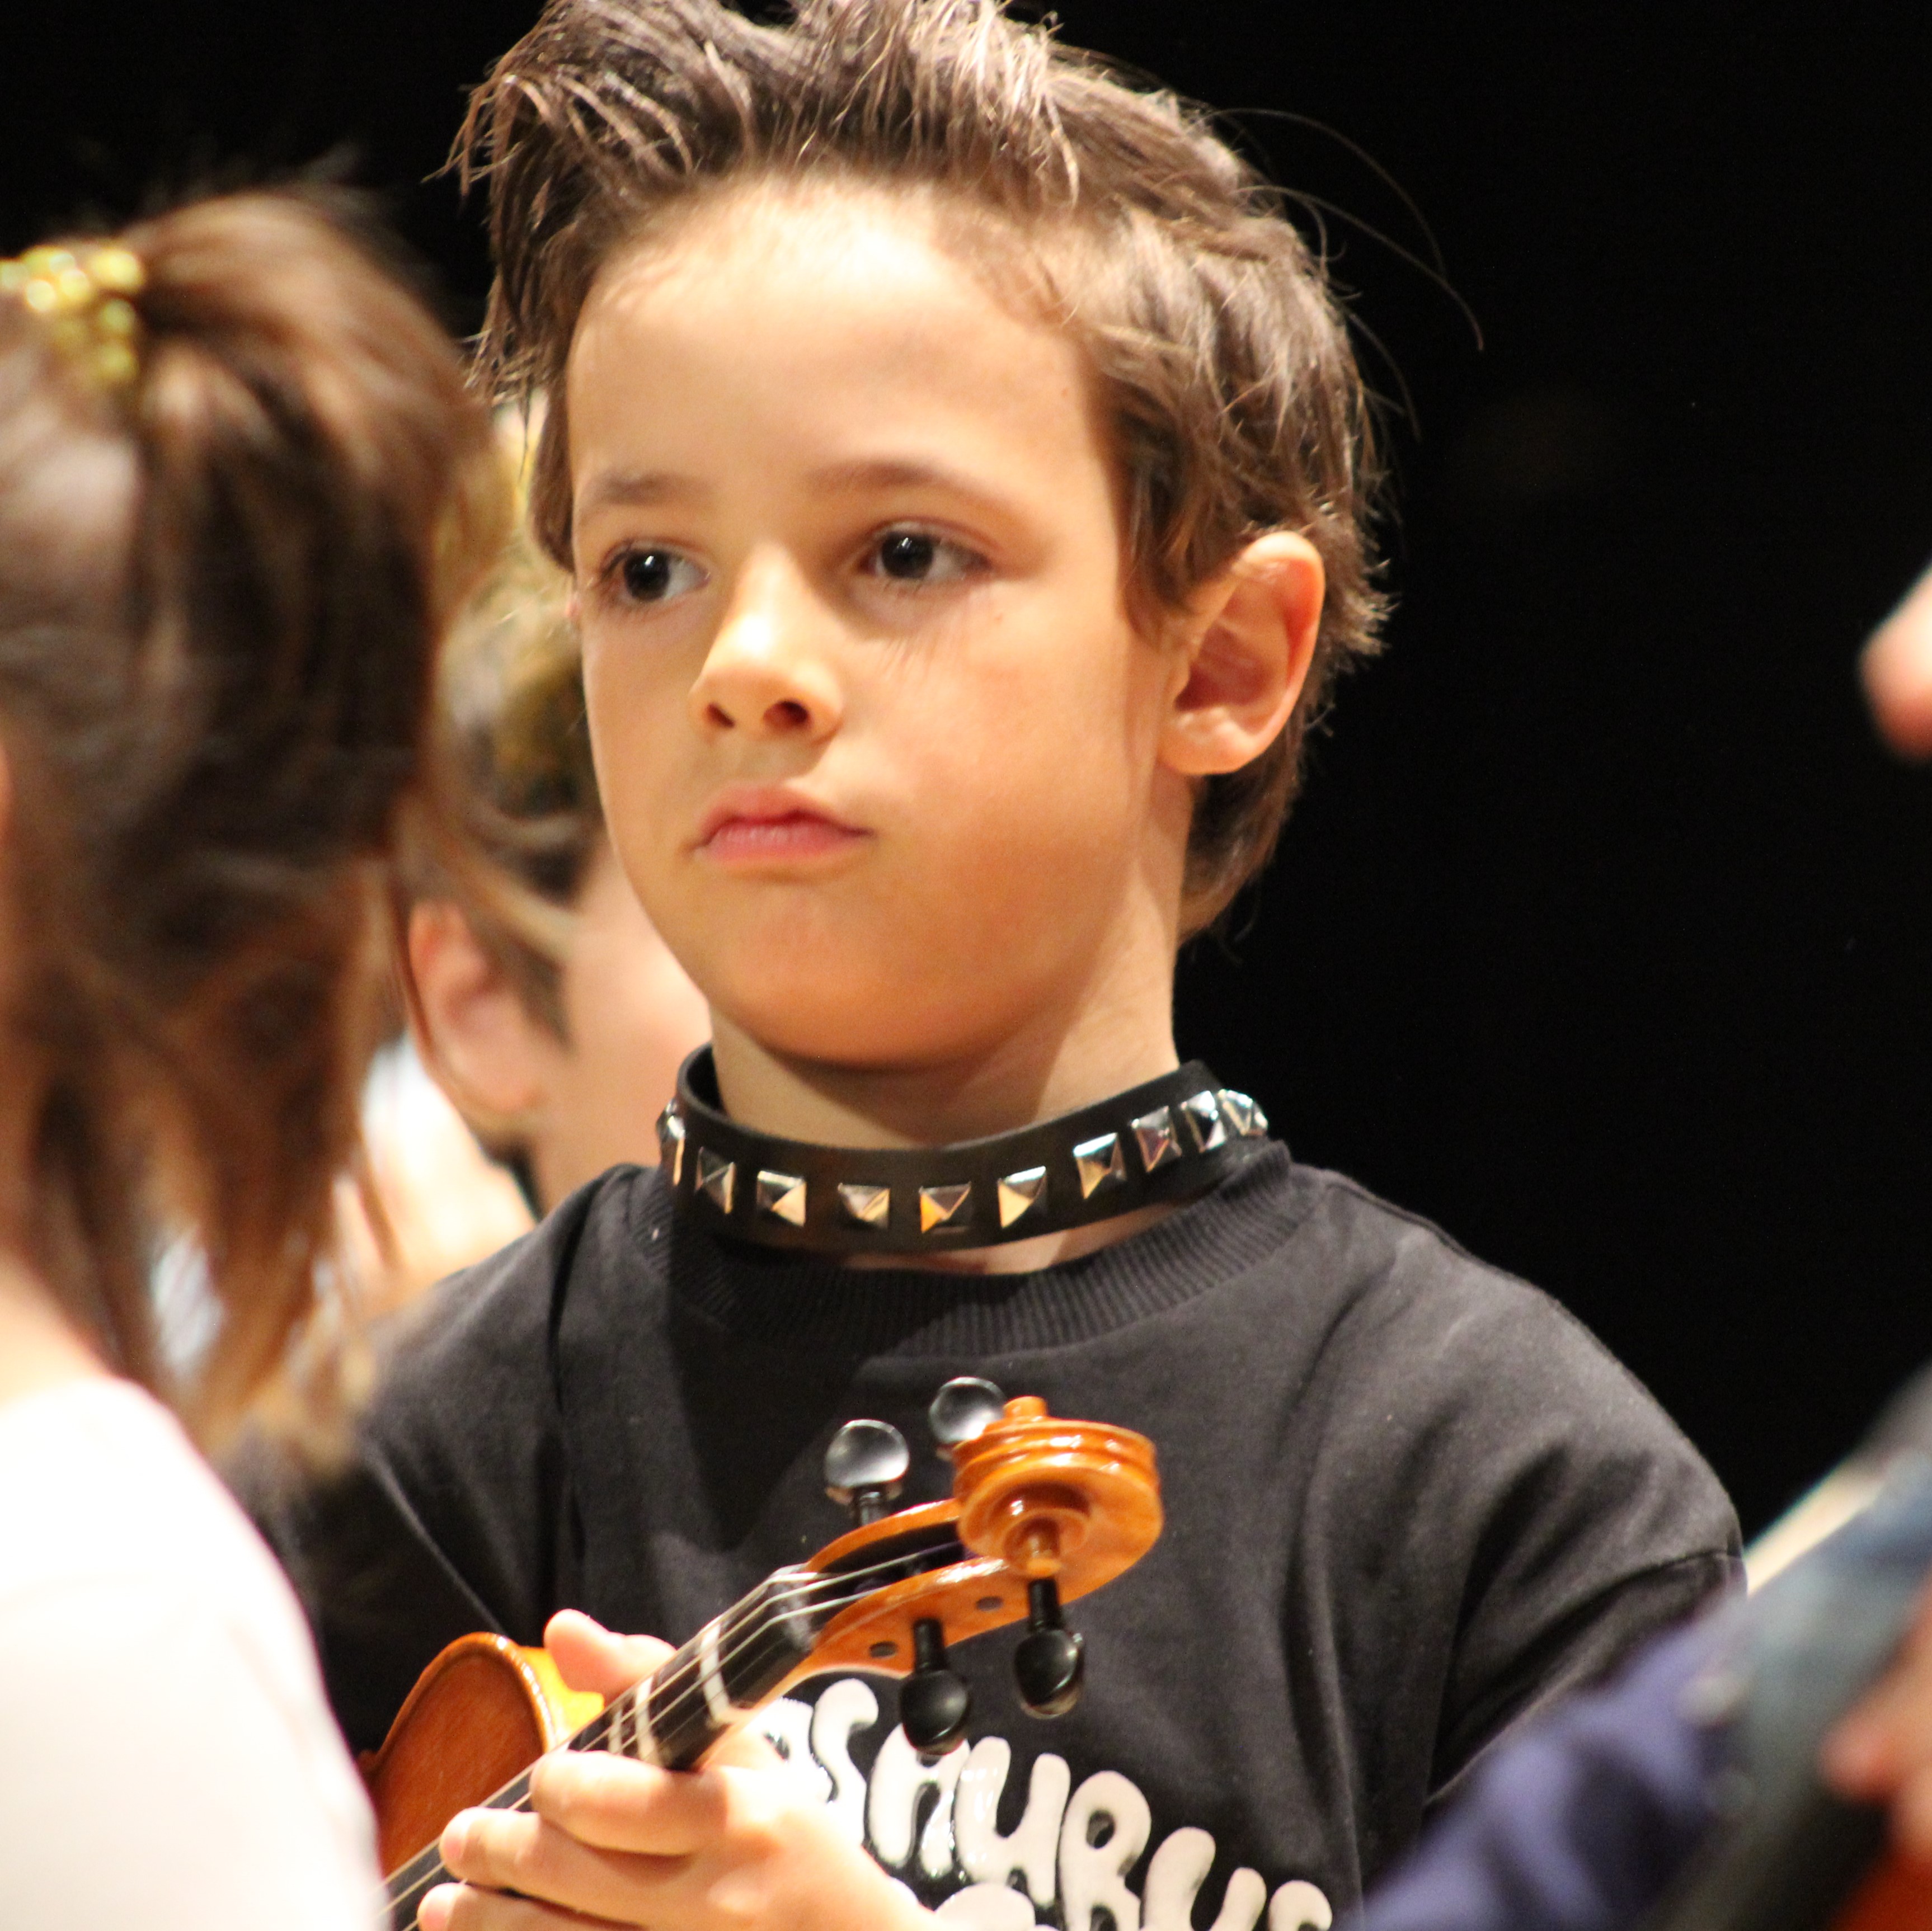 Alumno de violín de ocho esperando a que llegue el turno de su melodía en la pieza que está sonando en el ensayo para el concierto